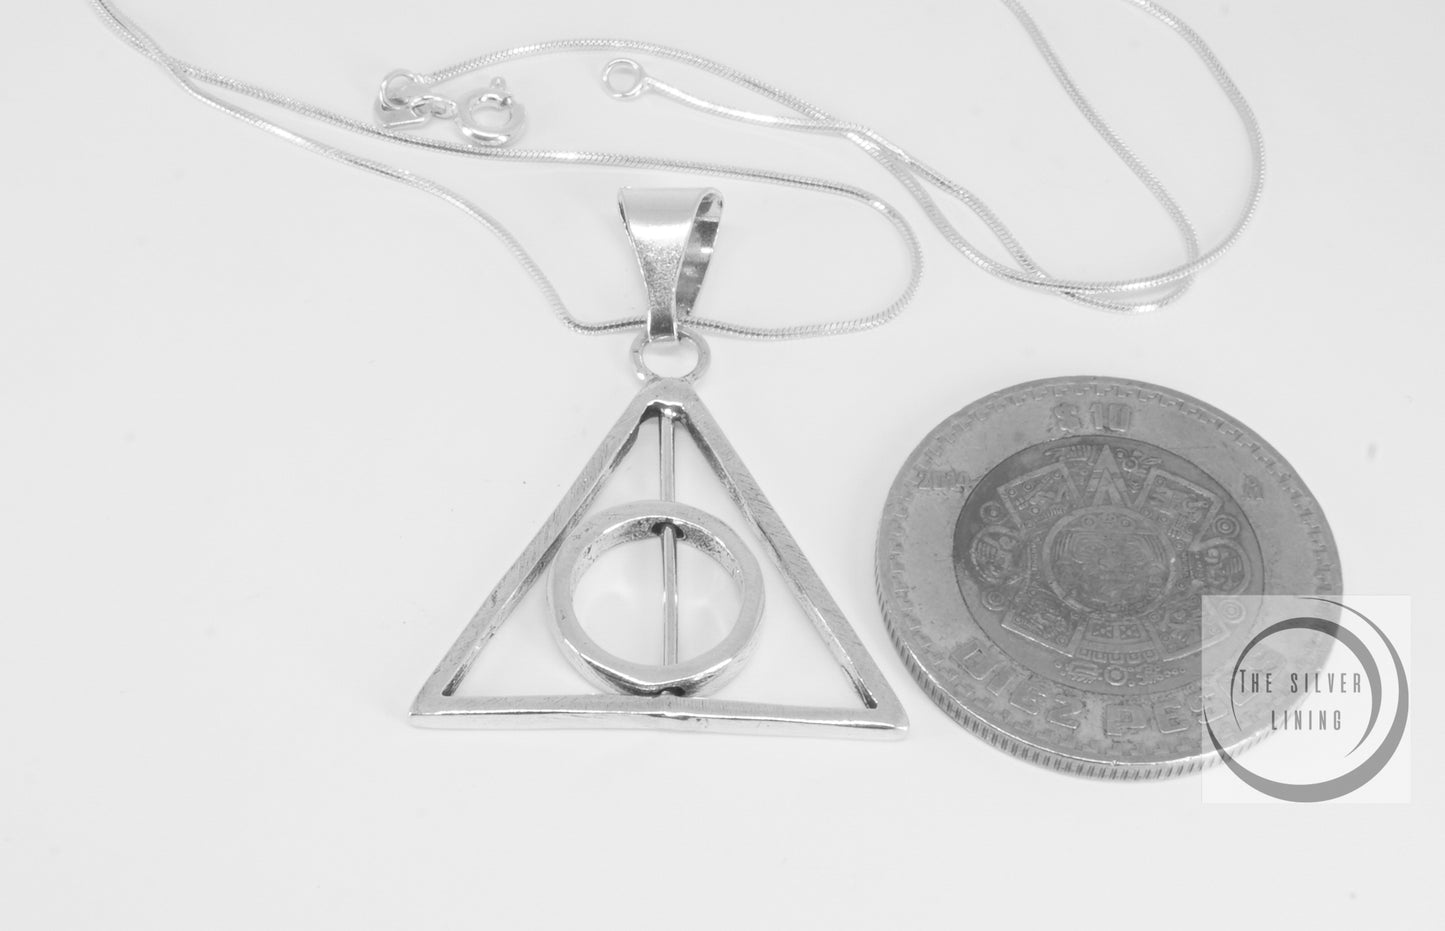 Dije de plata 925, Las Reliquias de la Muerte de Harry Potter con cadena incluída